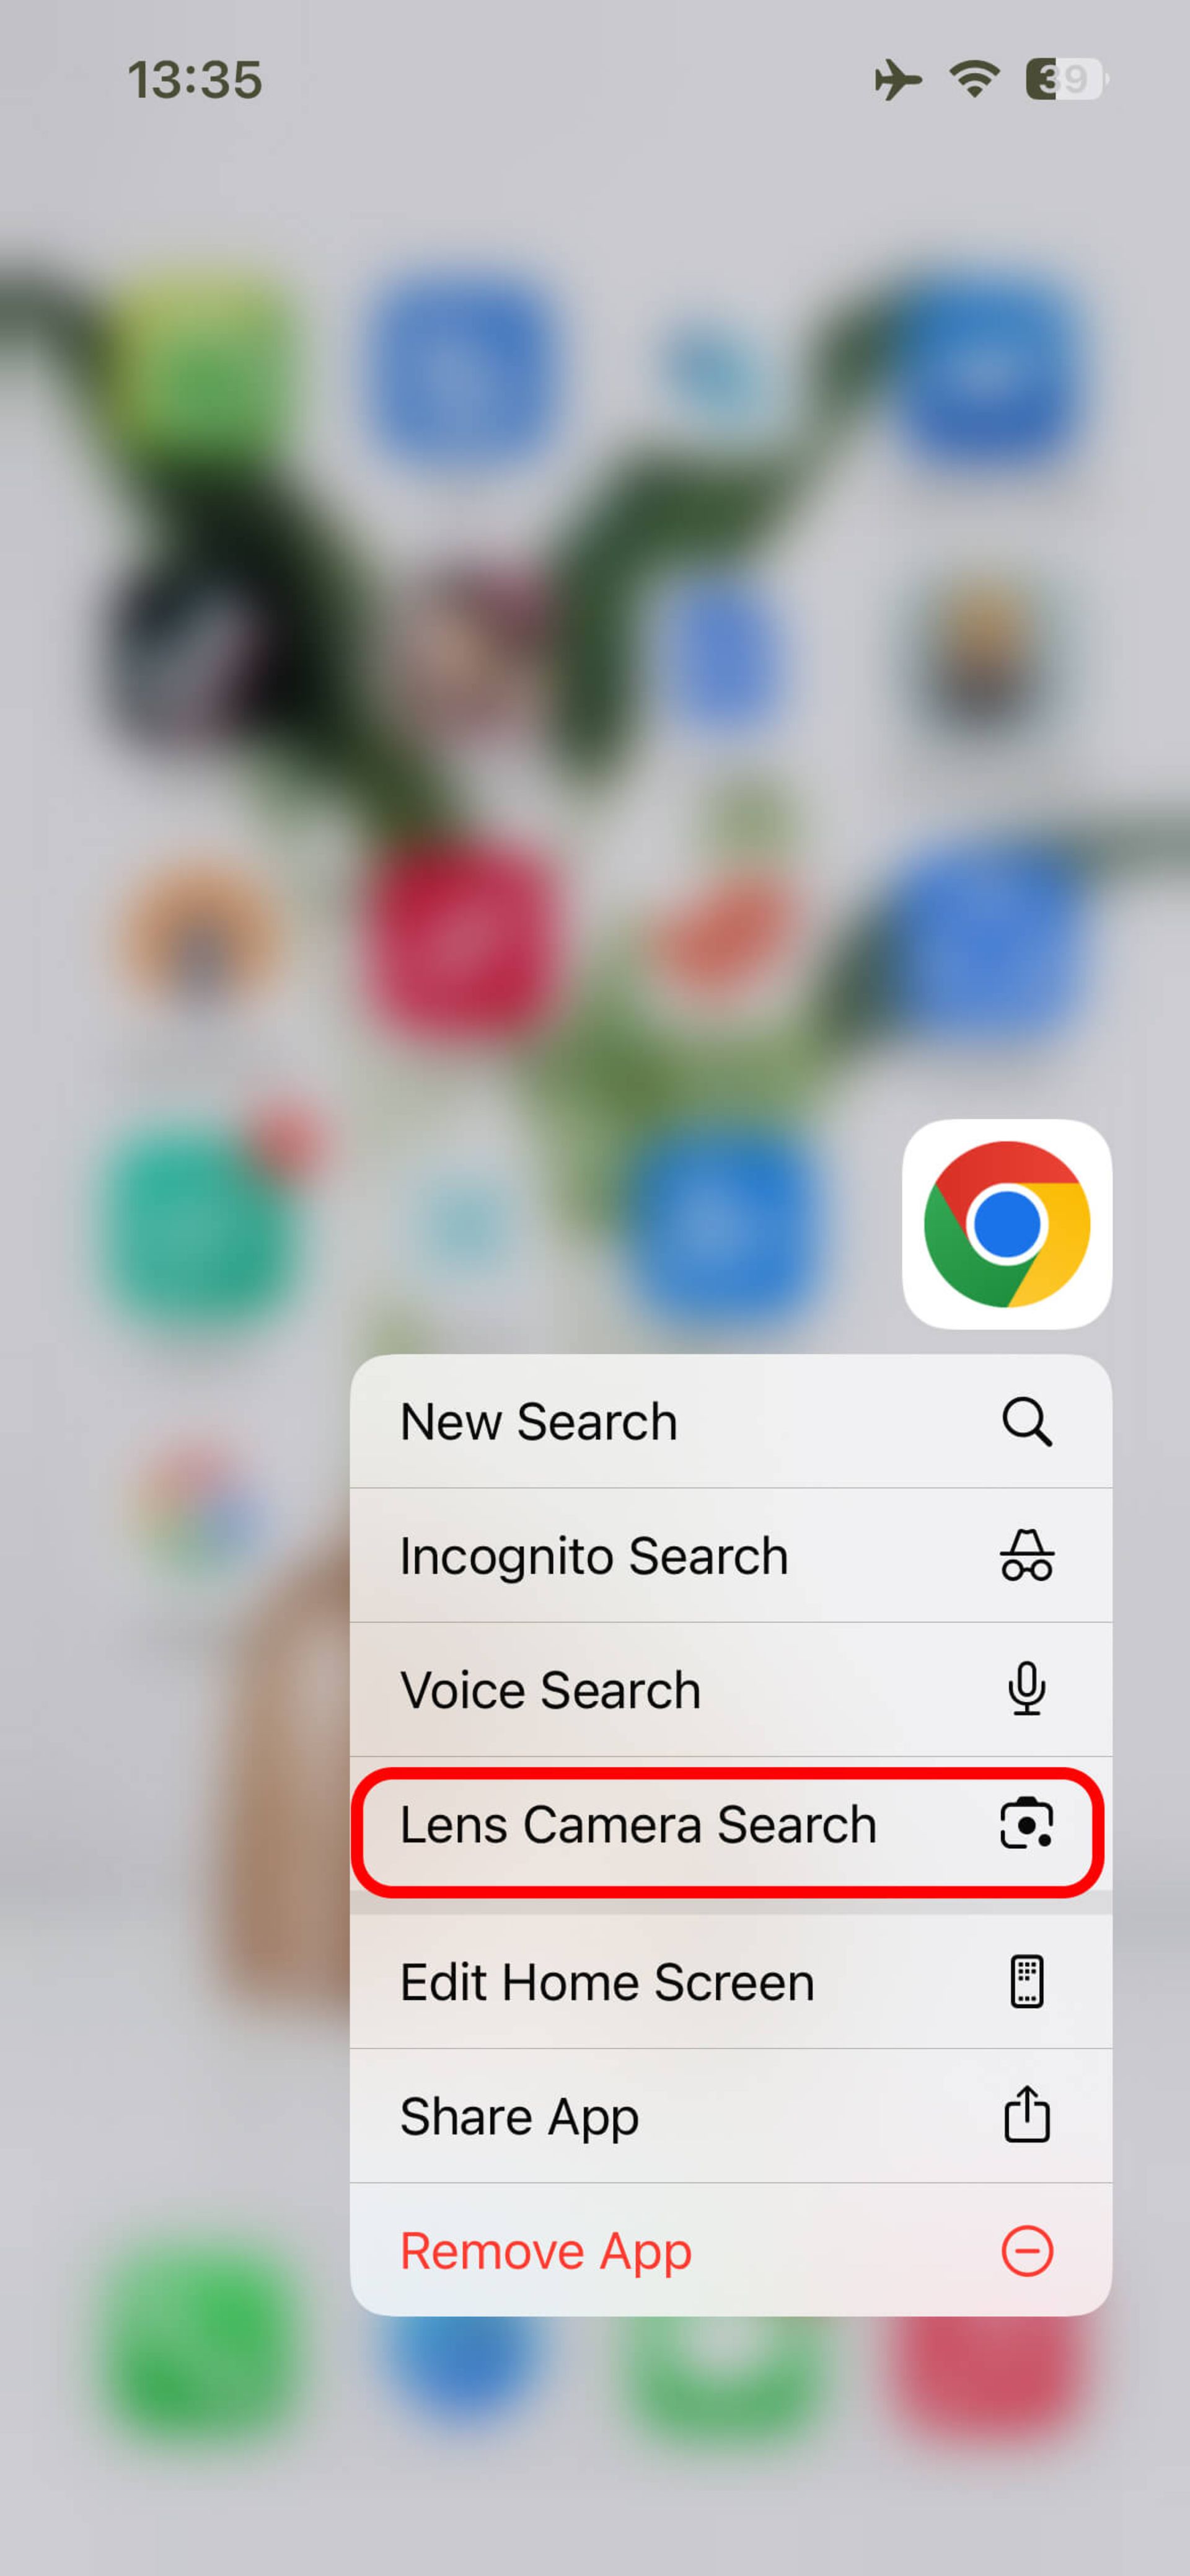 انتخاب Lens Camera Search در گوگل کروم برای اسکن کد qr آیفون